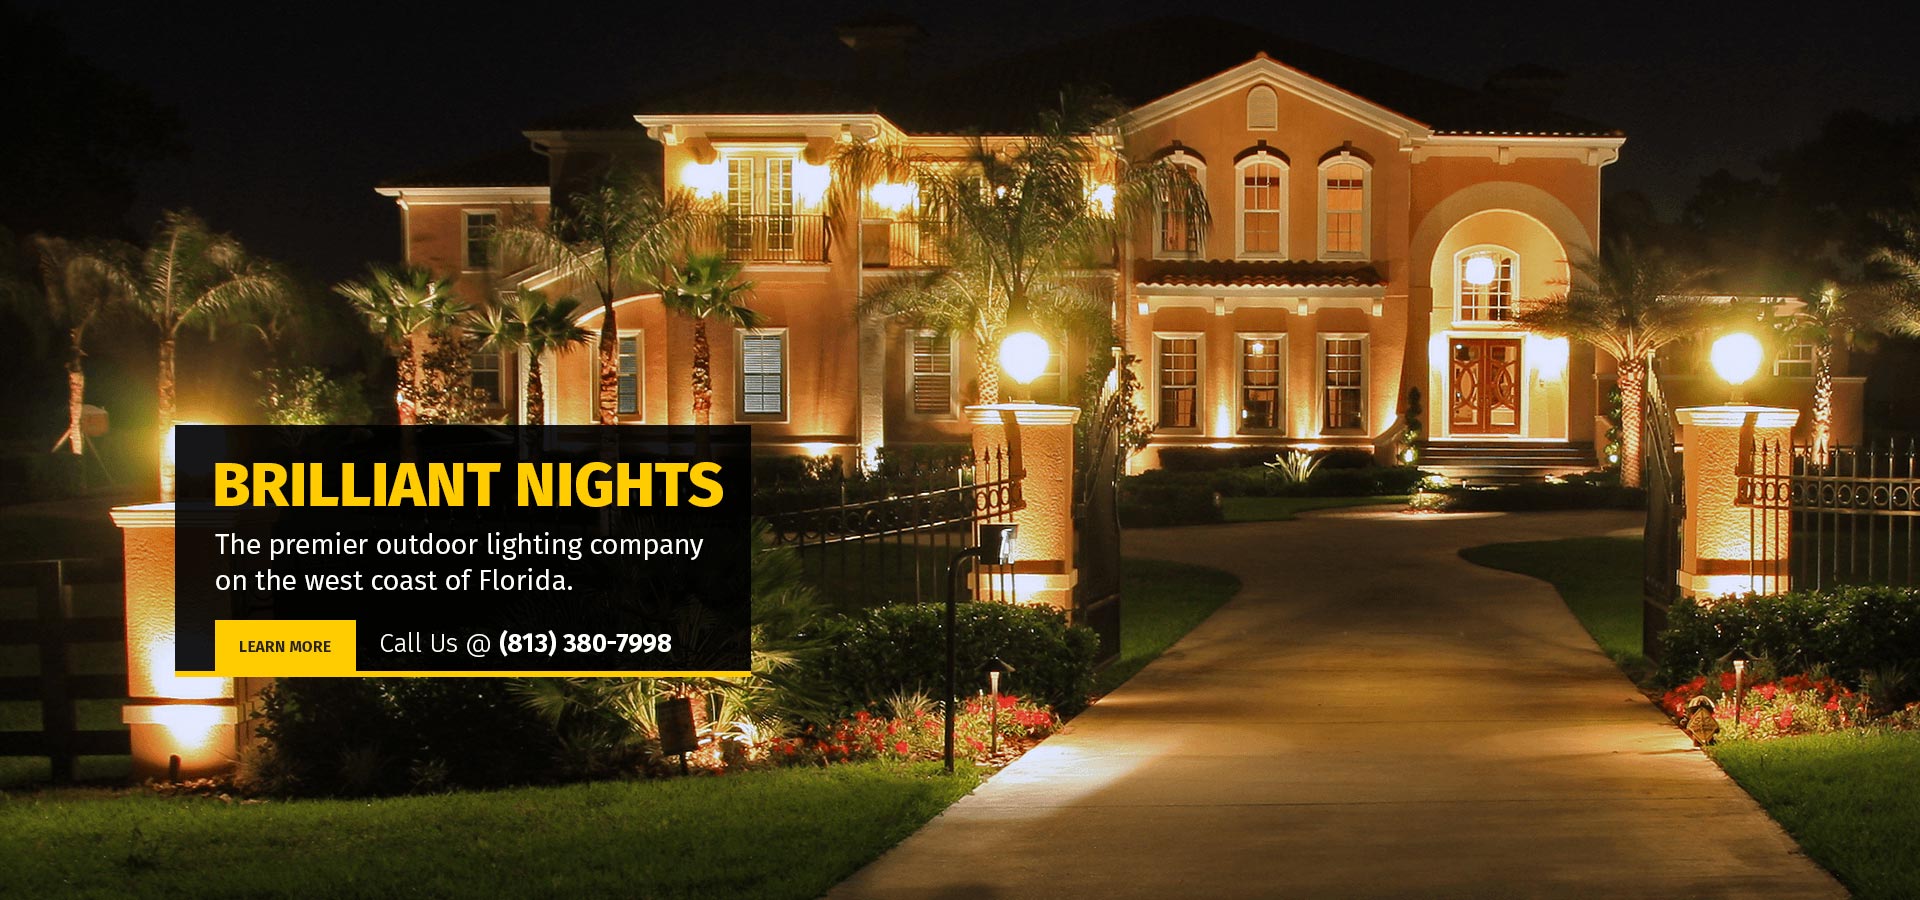 Artistry In Outdoor Lighting, Best Rated Outdoor Lighting Companies